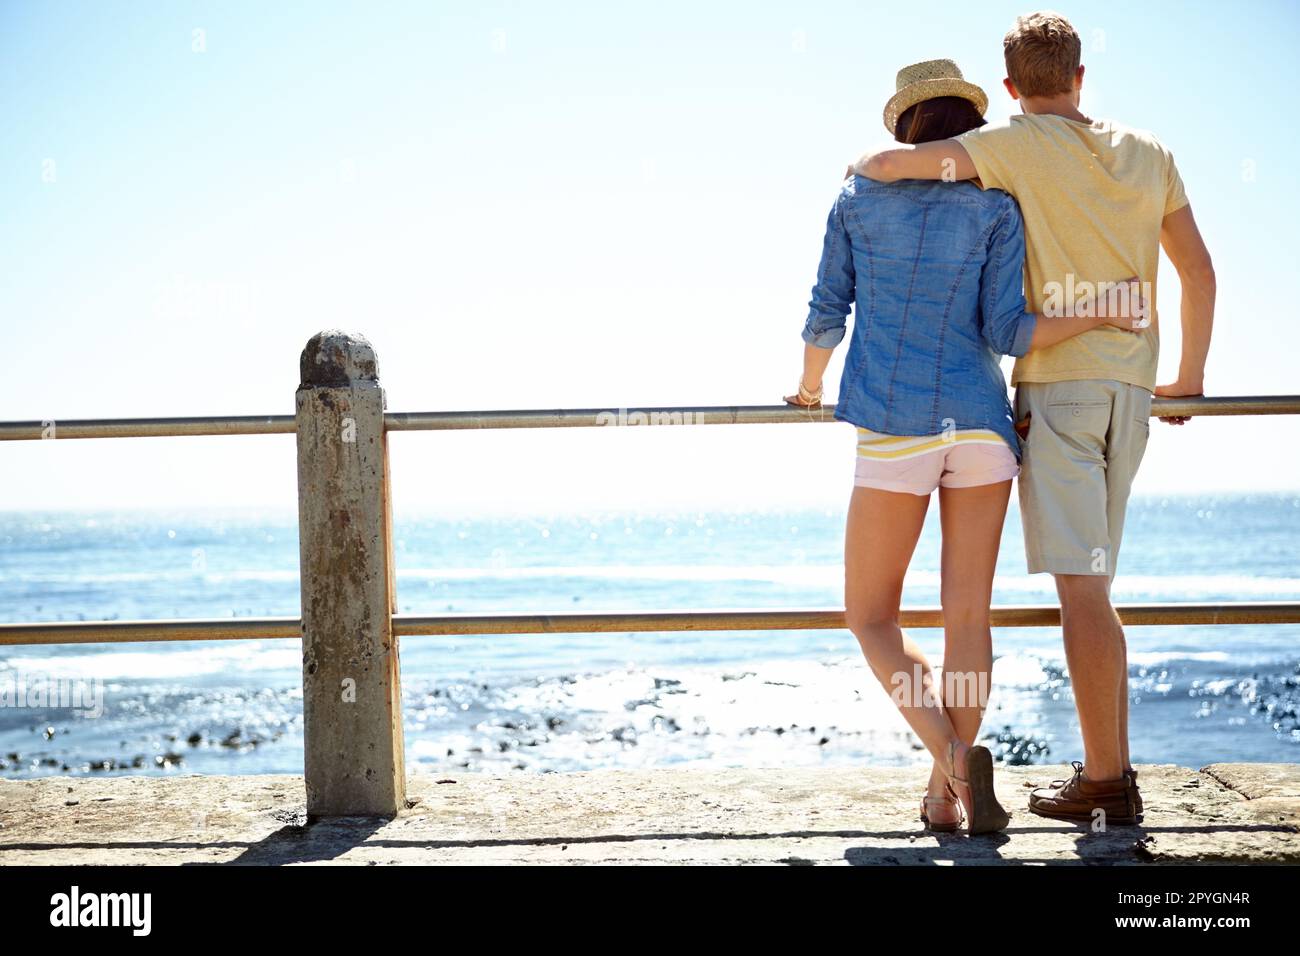 Apprezzare la vista. Vista posteriore di una giovane coppia in piedi su un molo che guarda all'oceano. Foto Stock